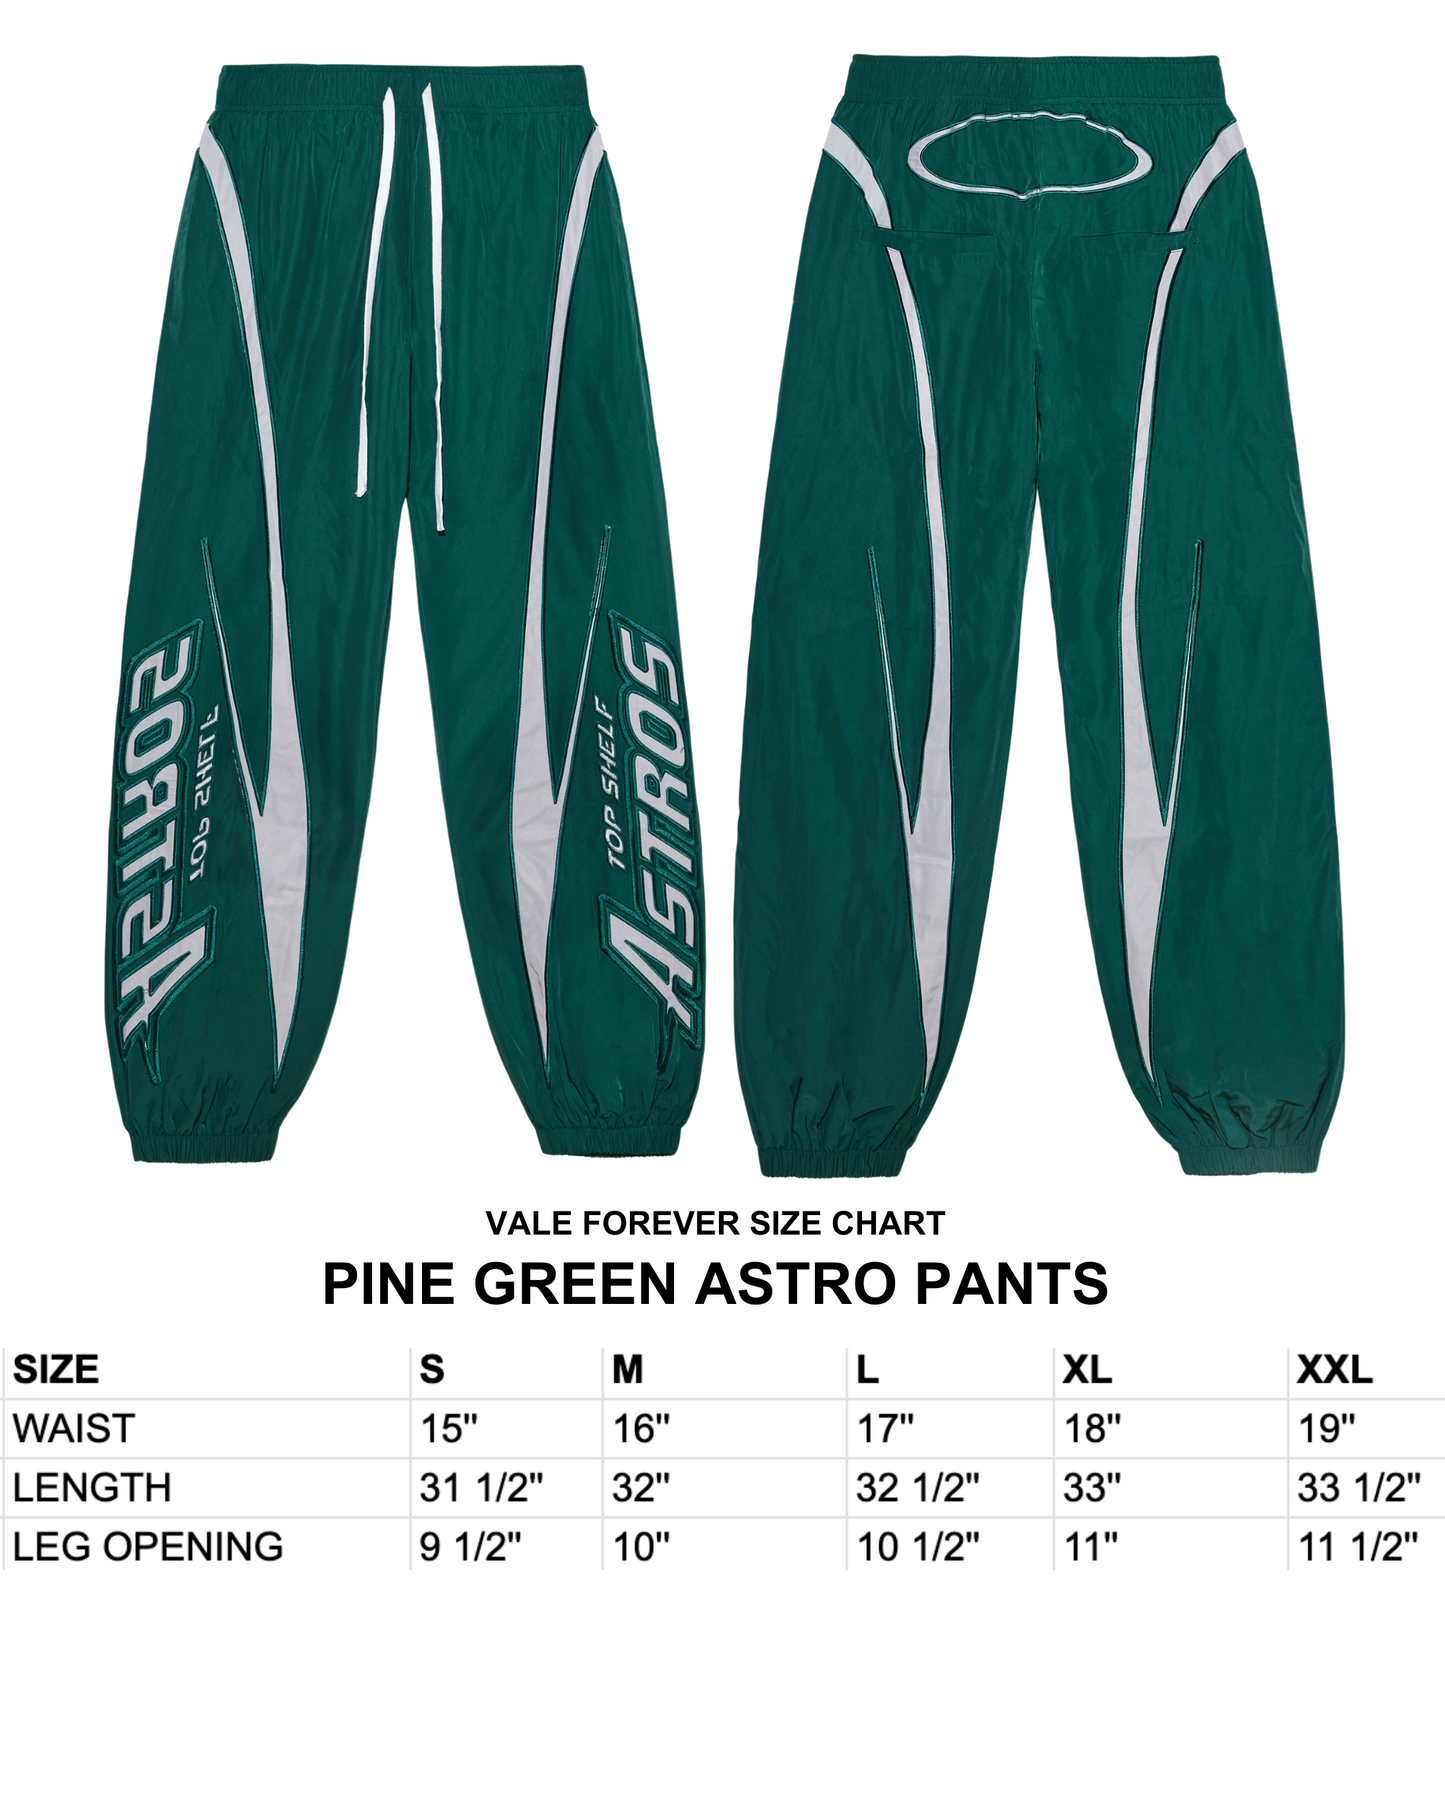 PINE GREEN ASTRO PANTS